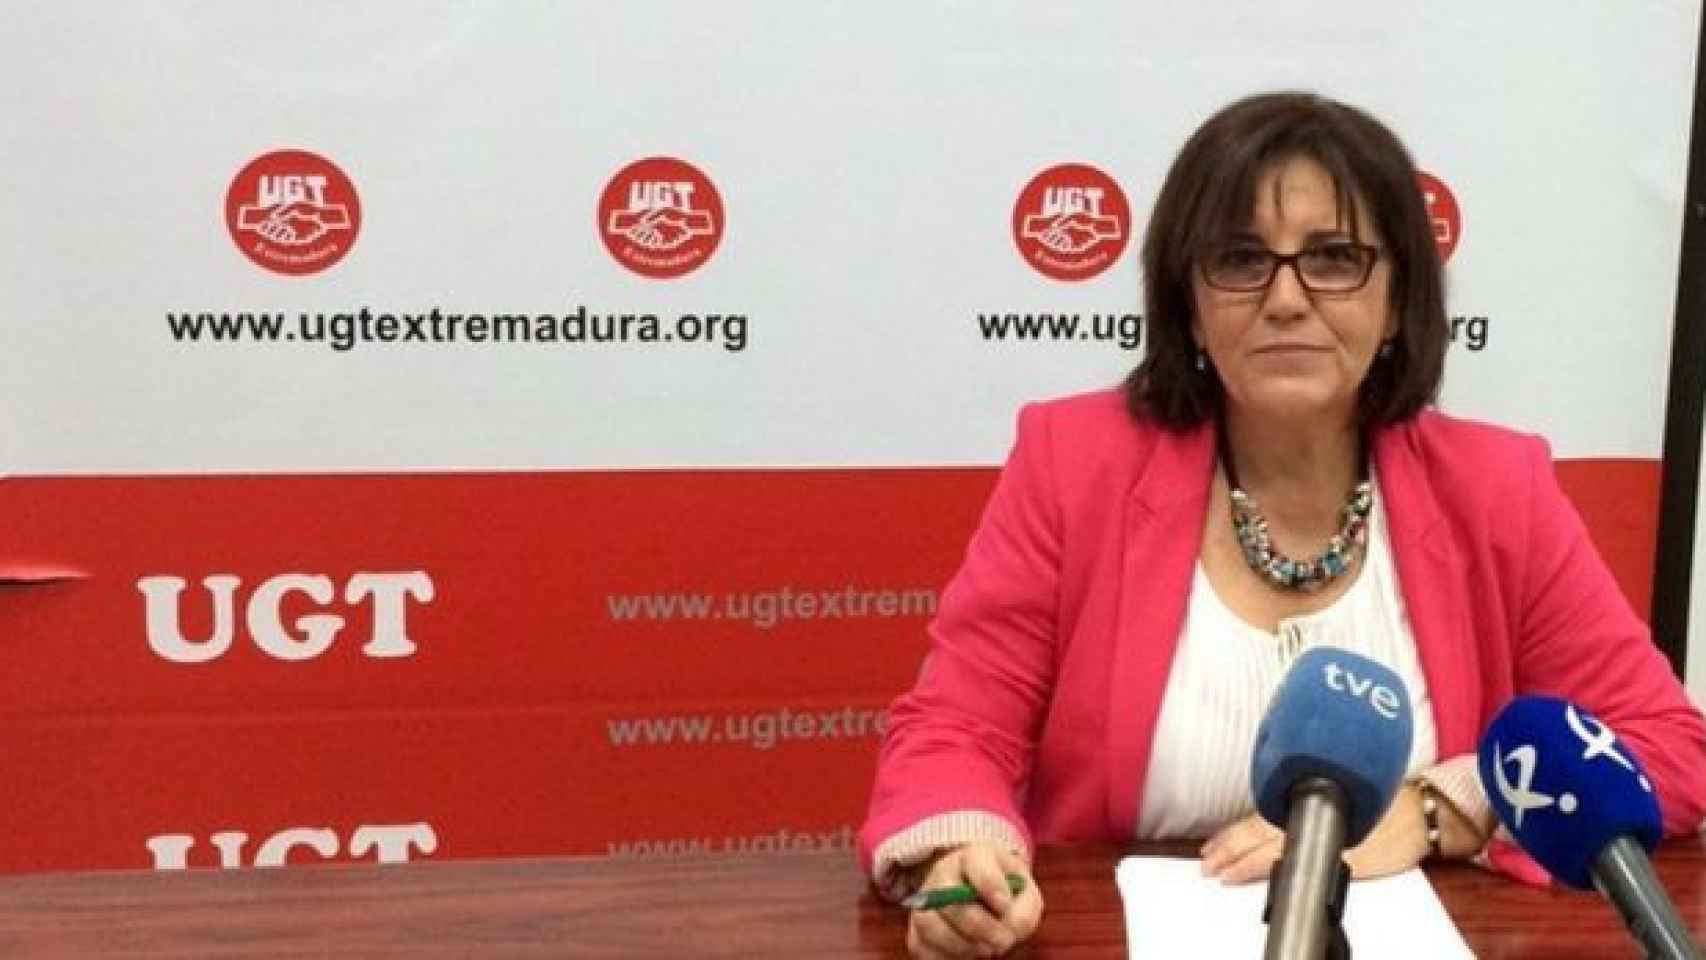 Patrocinio Sánchez, secretaria de Acción Sindical de UGT Extremadura